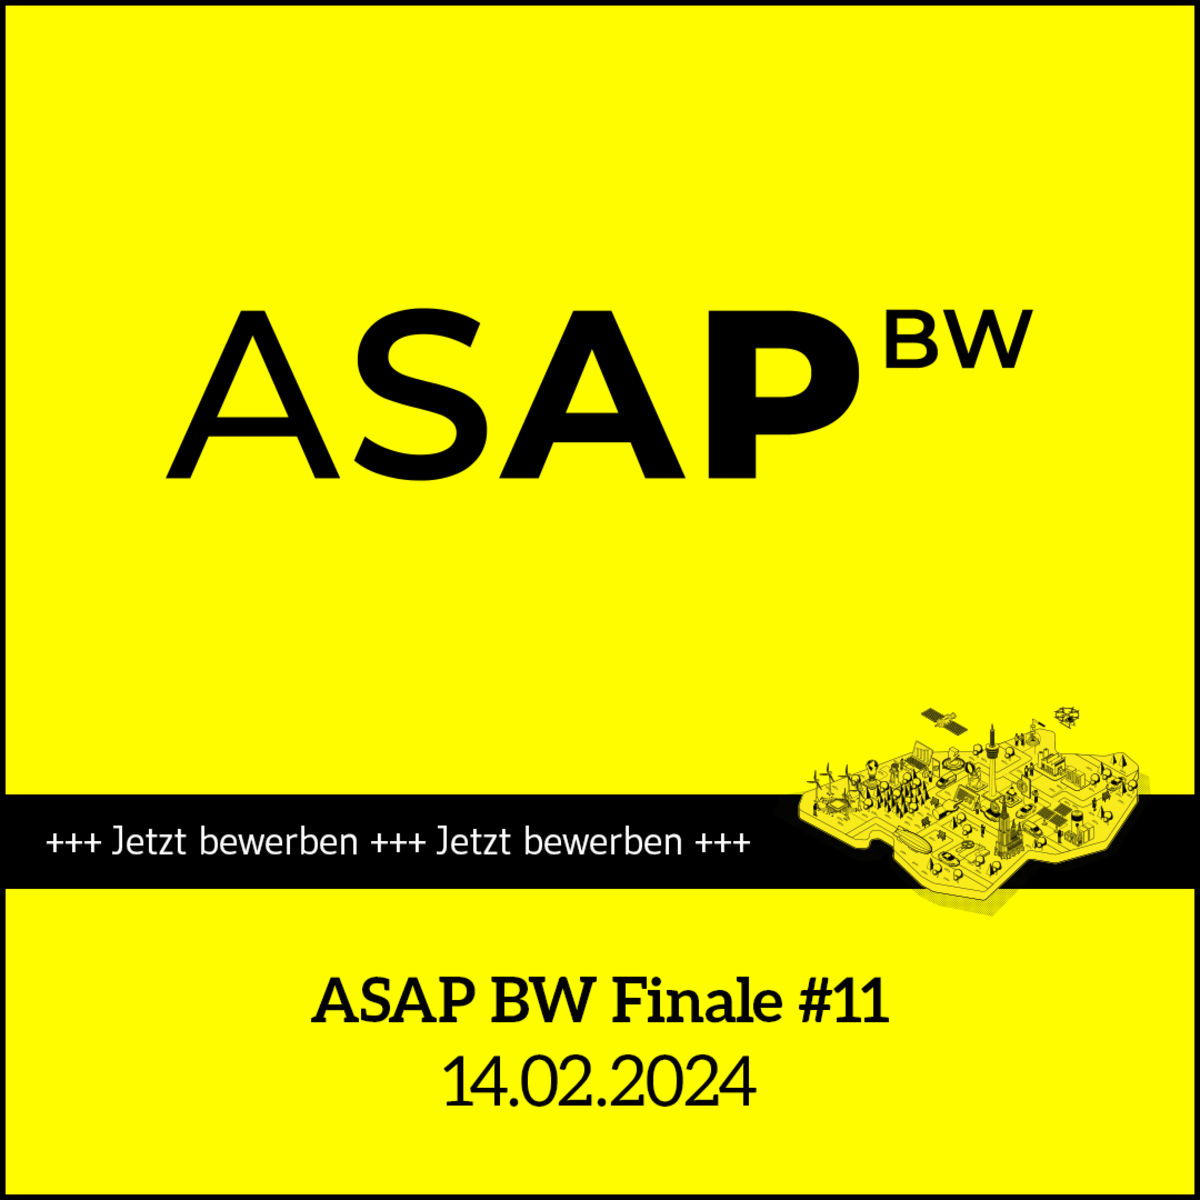 Termin-Kachel für das ASAP BW Finale #11 am 14.02.2024, ein weiterer Vorentscheid für den Start-up BW Elevator Pitch 2024. 